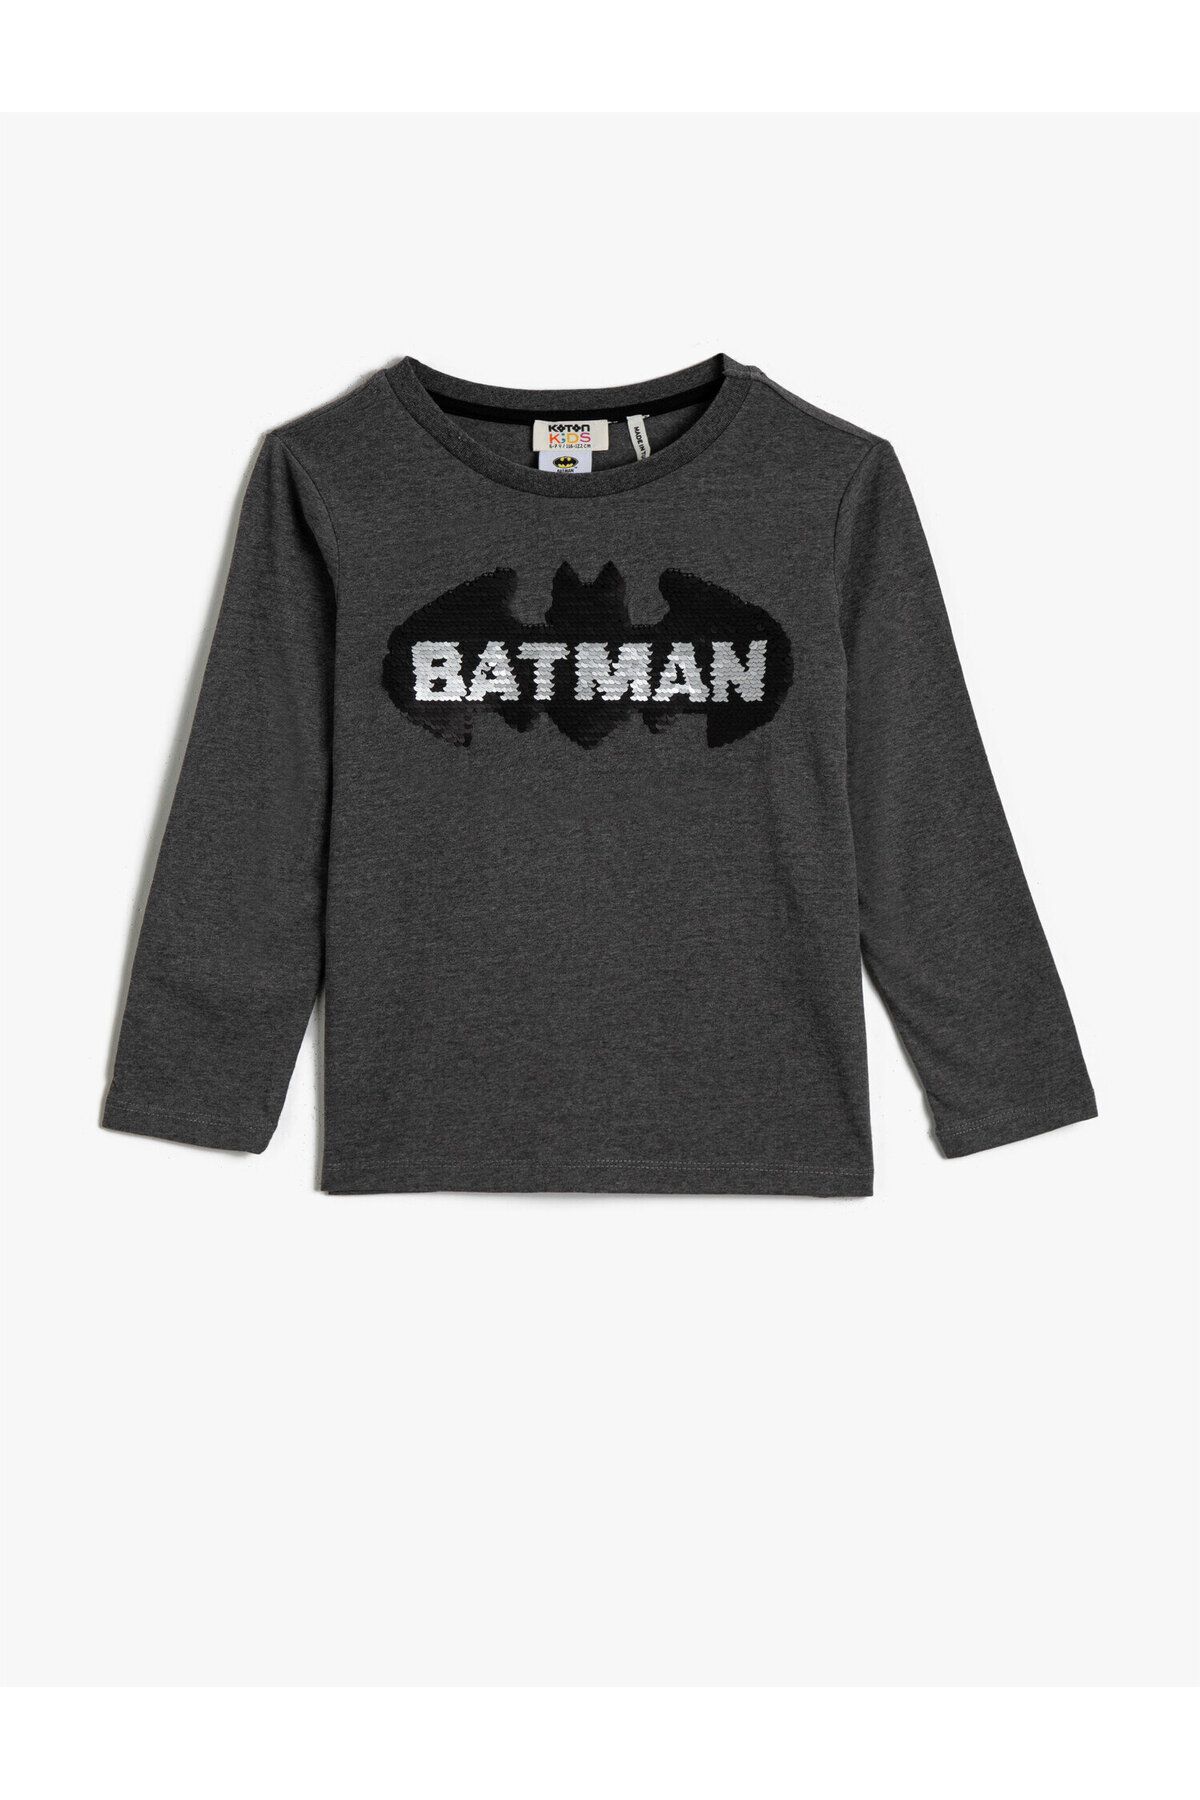 Koton Batman Lisanslı Tişört Pamuklu Uzun Kollu